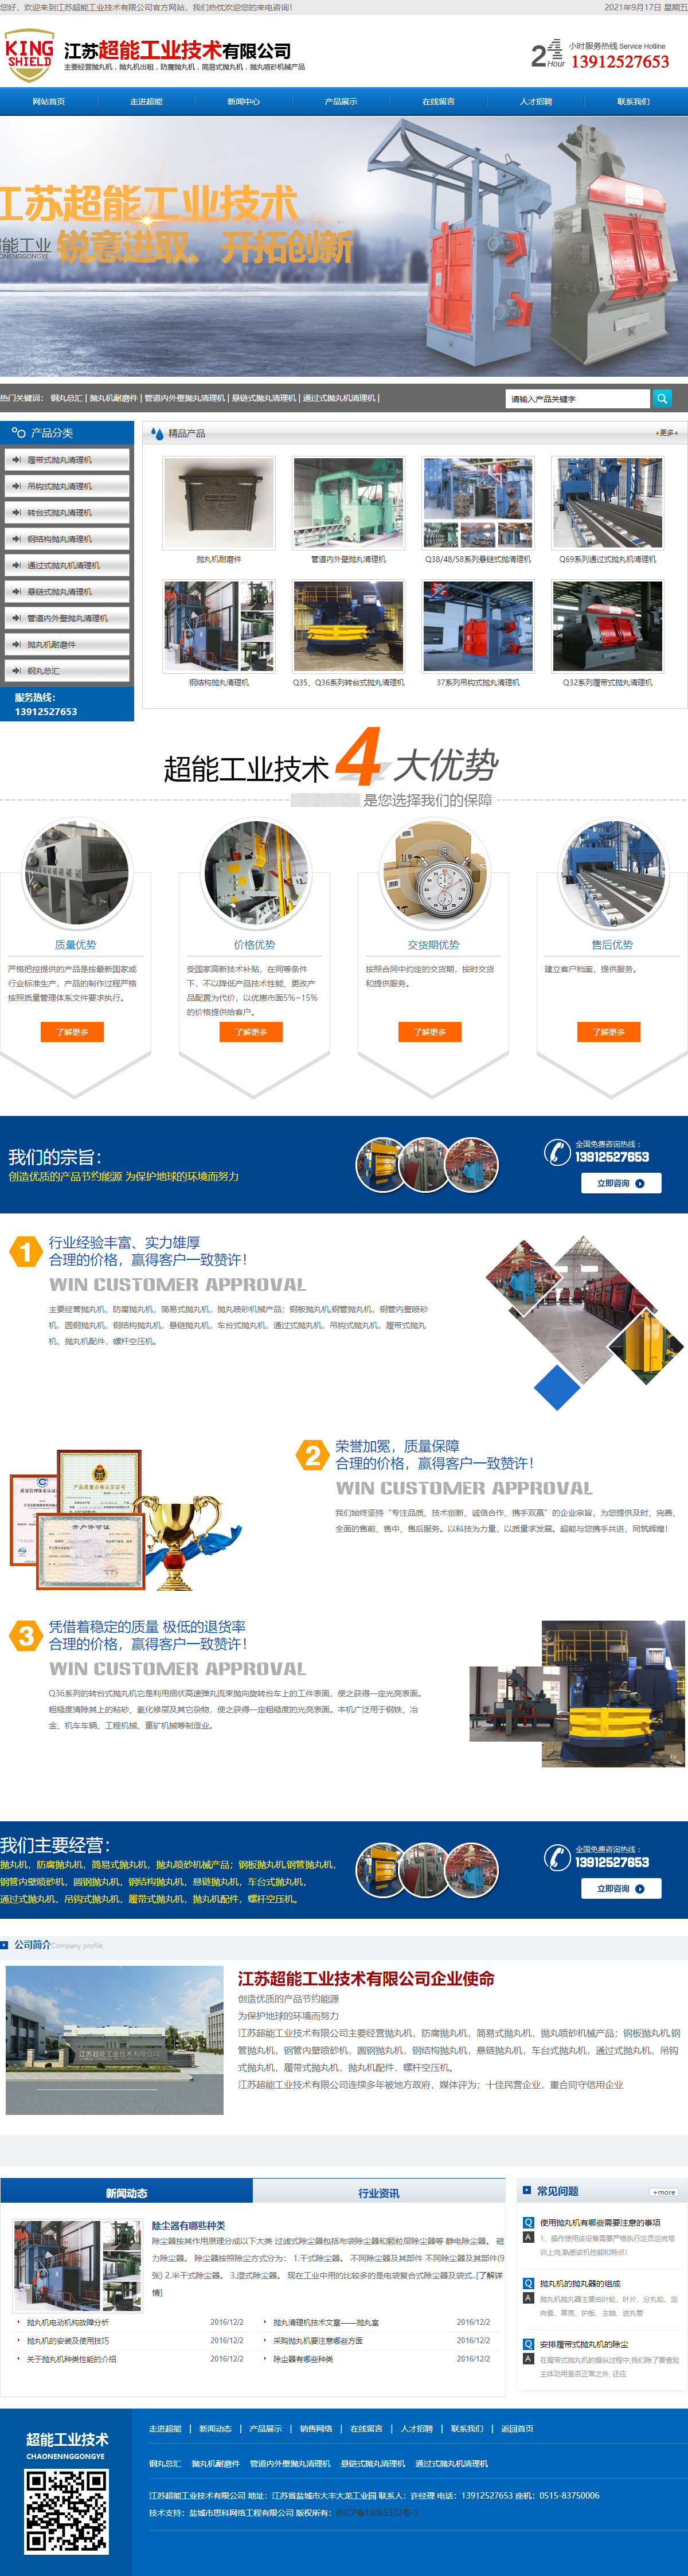 江苏超能工业技术有限公司网站案例